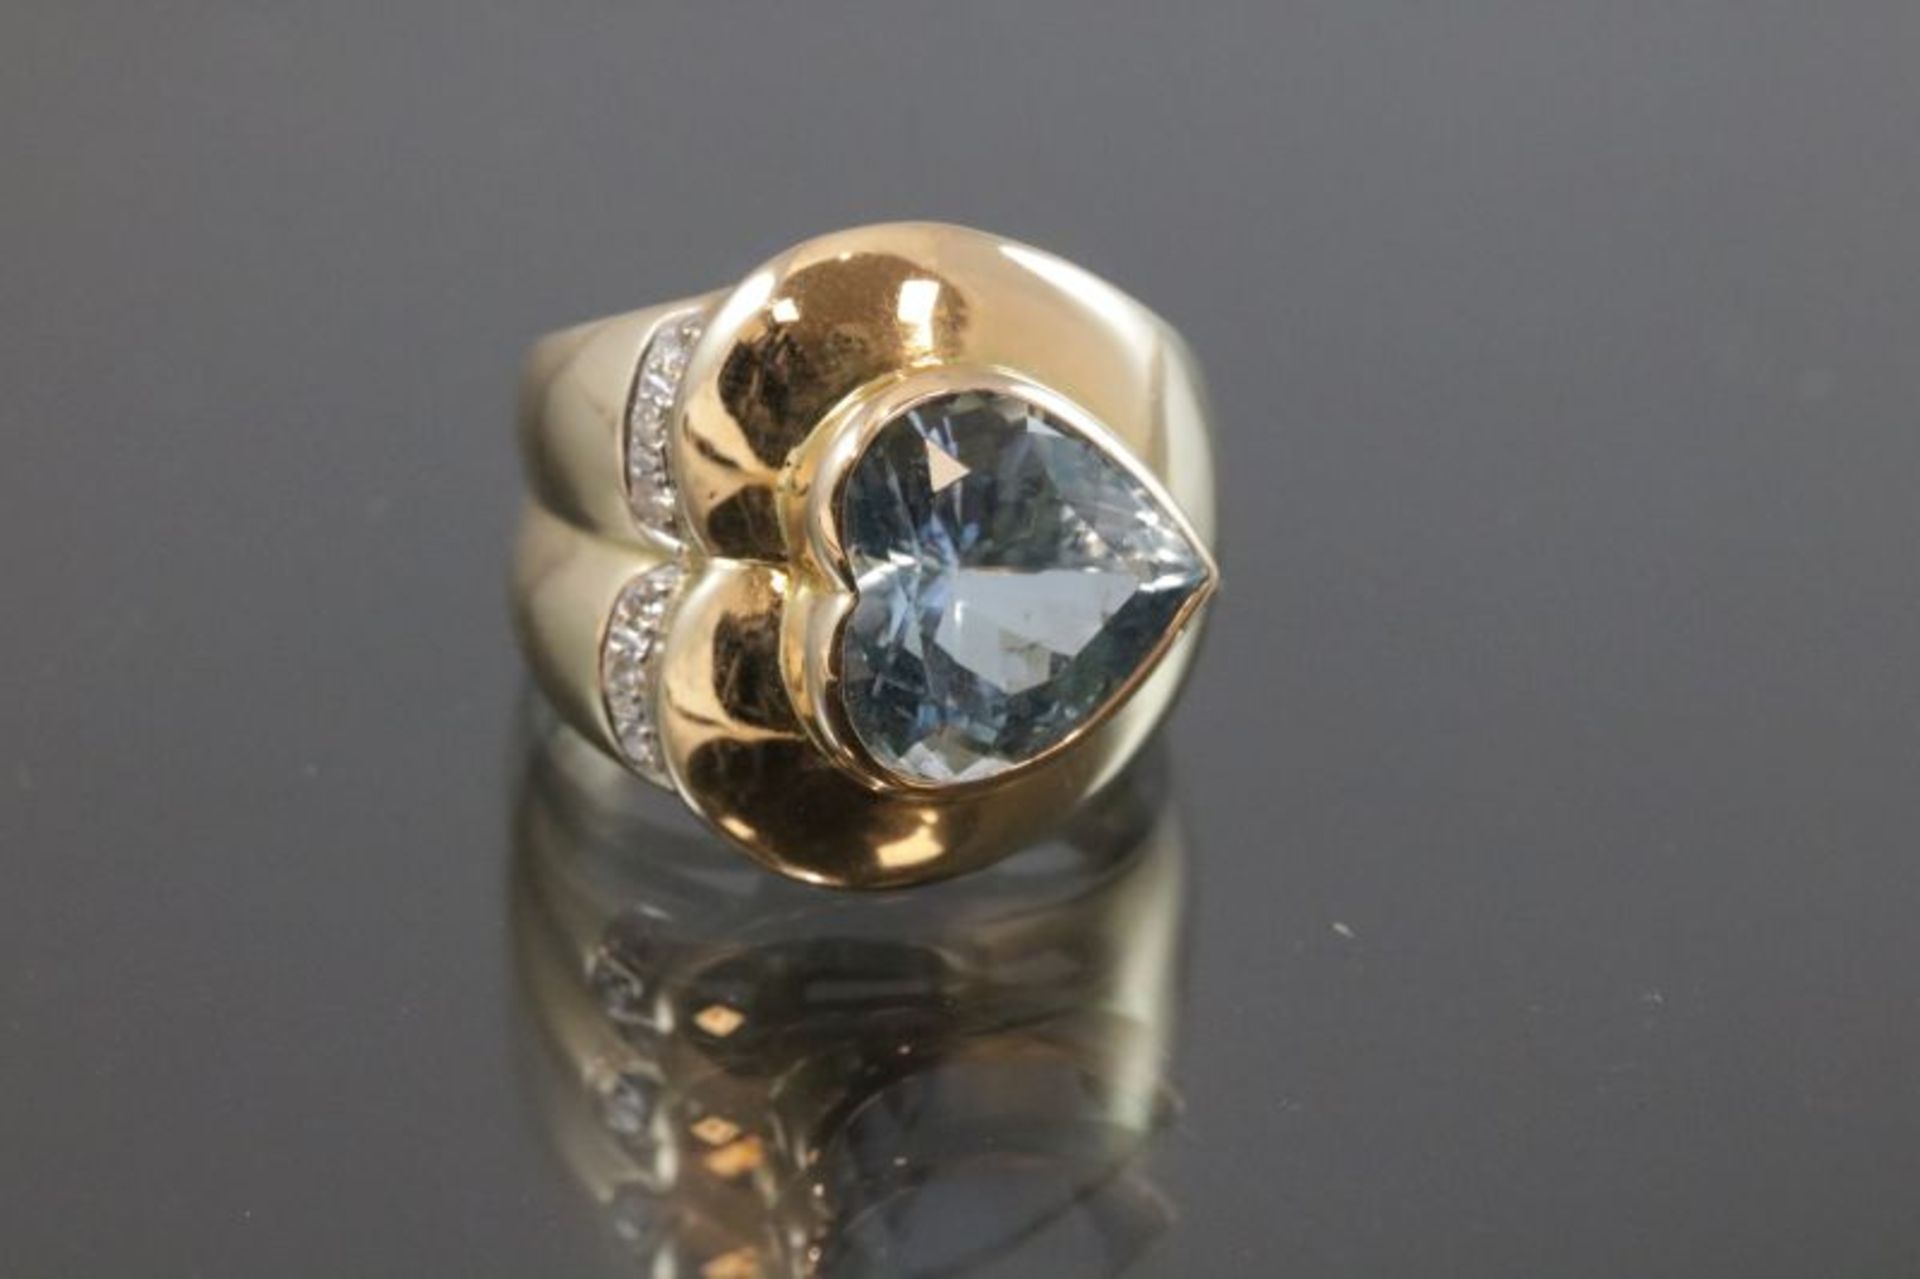 Topas-Brillant-Ring, 585 Gelbgold13,4 Gramm 6 Brillanten, 0,06 ct., w/si. Ringgröße: